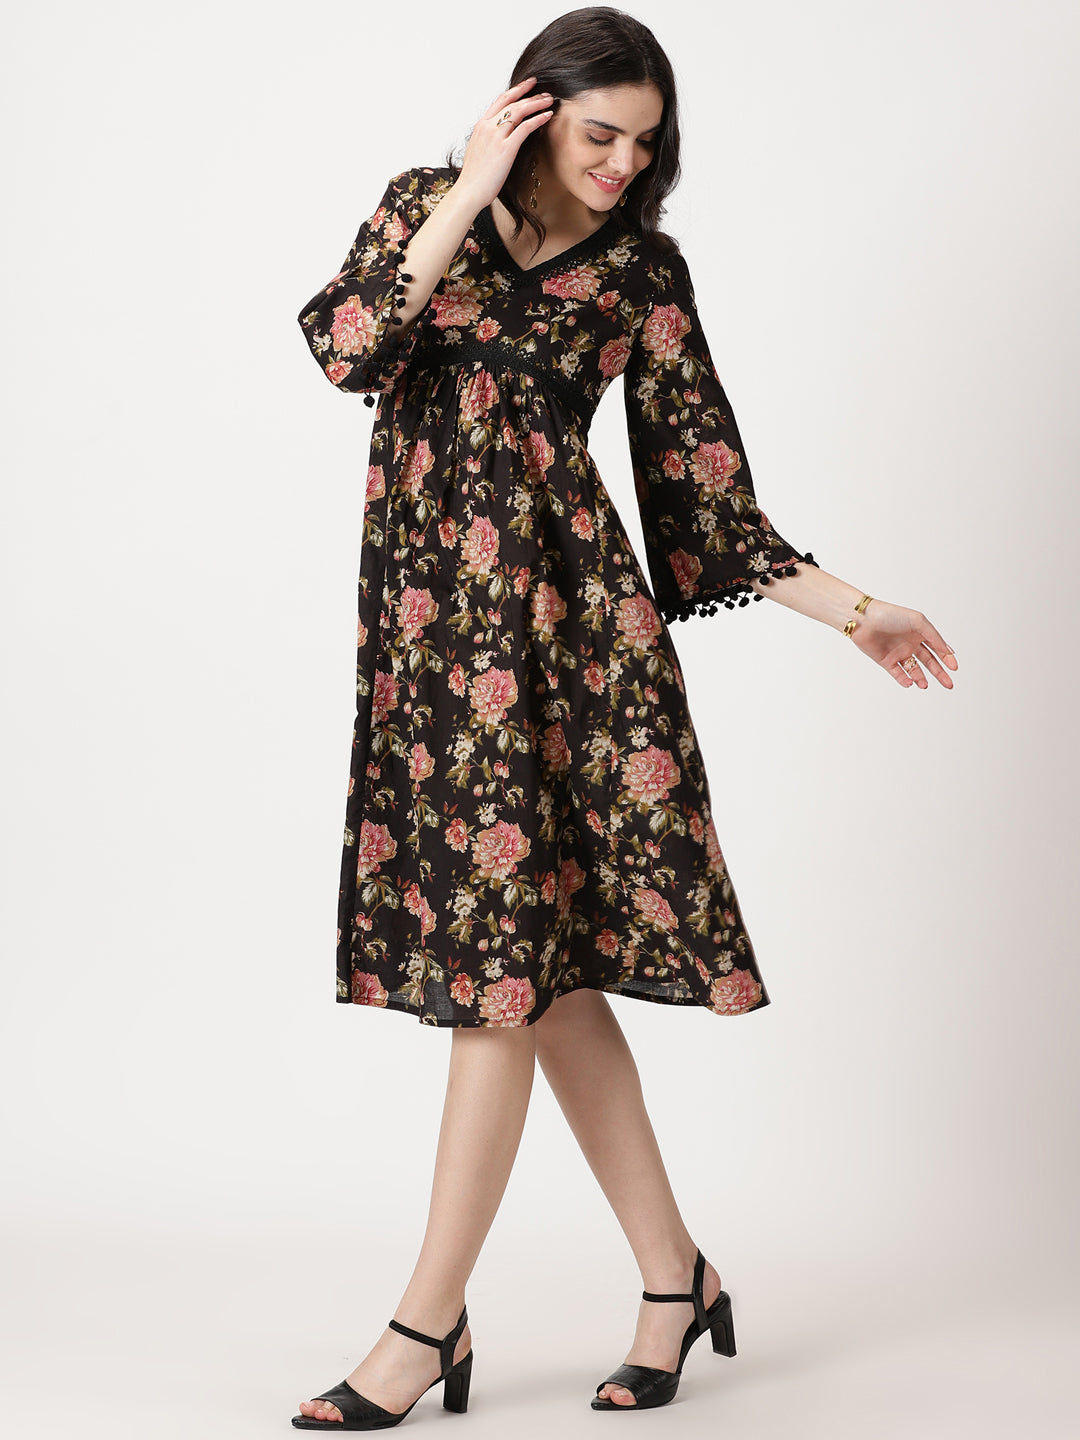 Black Floral Print Cotton Midi Dress with Lace Details